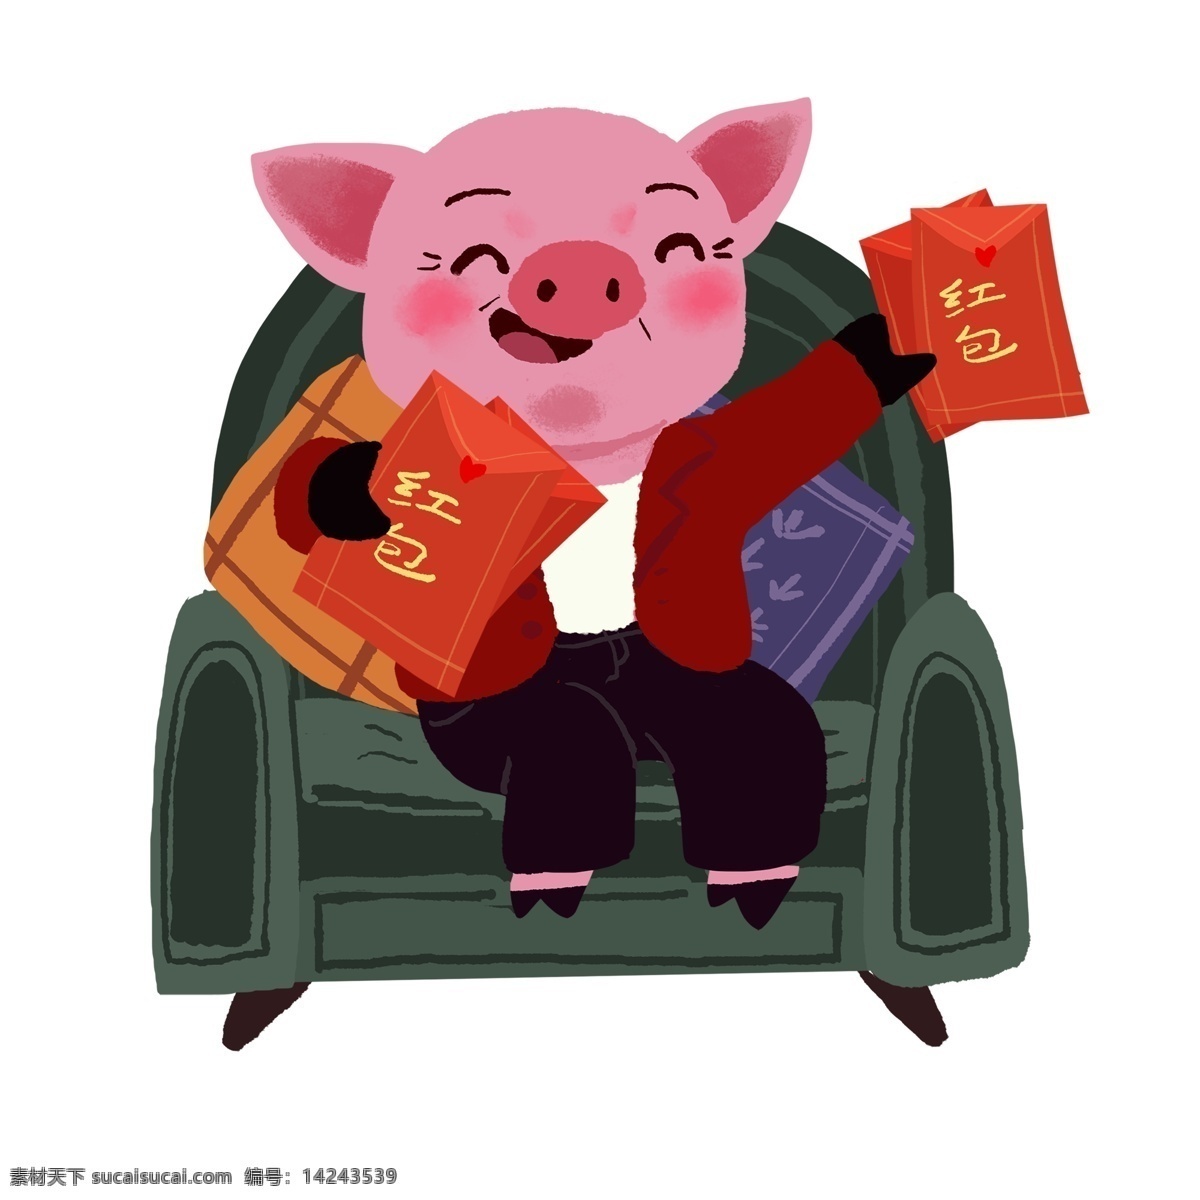 过年 坐在 沙发 上 派 红包 猪 爸爸 卡通 插画 春节 手绘 新年 小猪 猪爸爸 抱枕 猪年